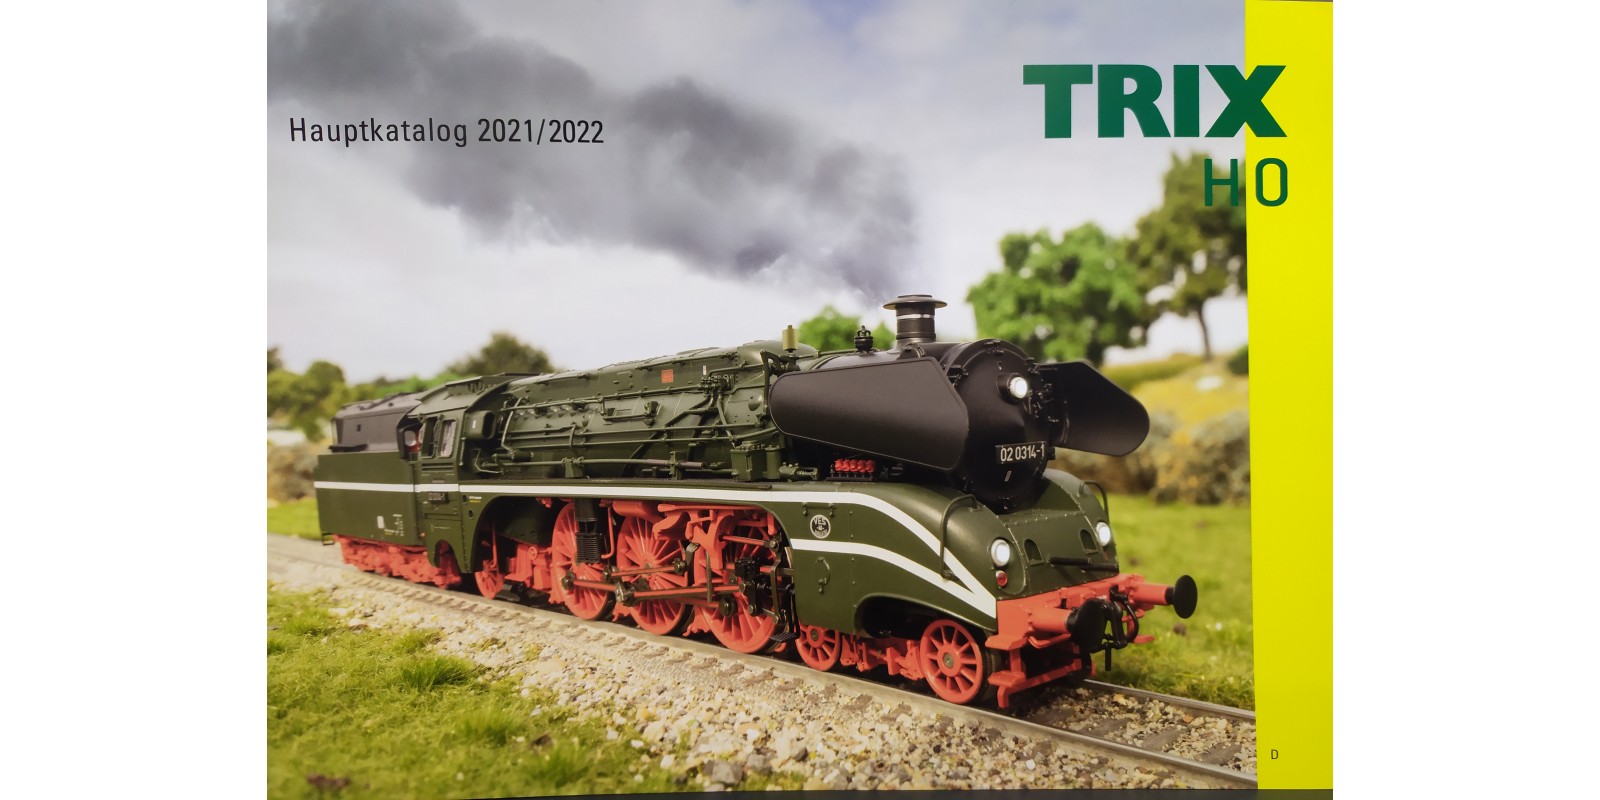 T19827 Trix H0-Katalog 2021/2022 D